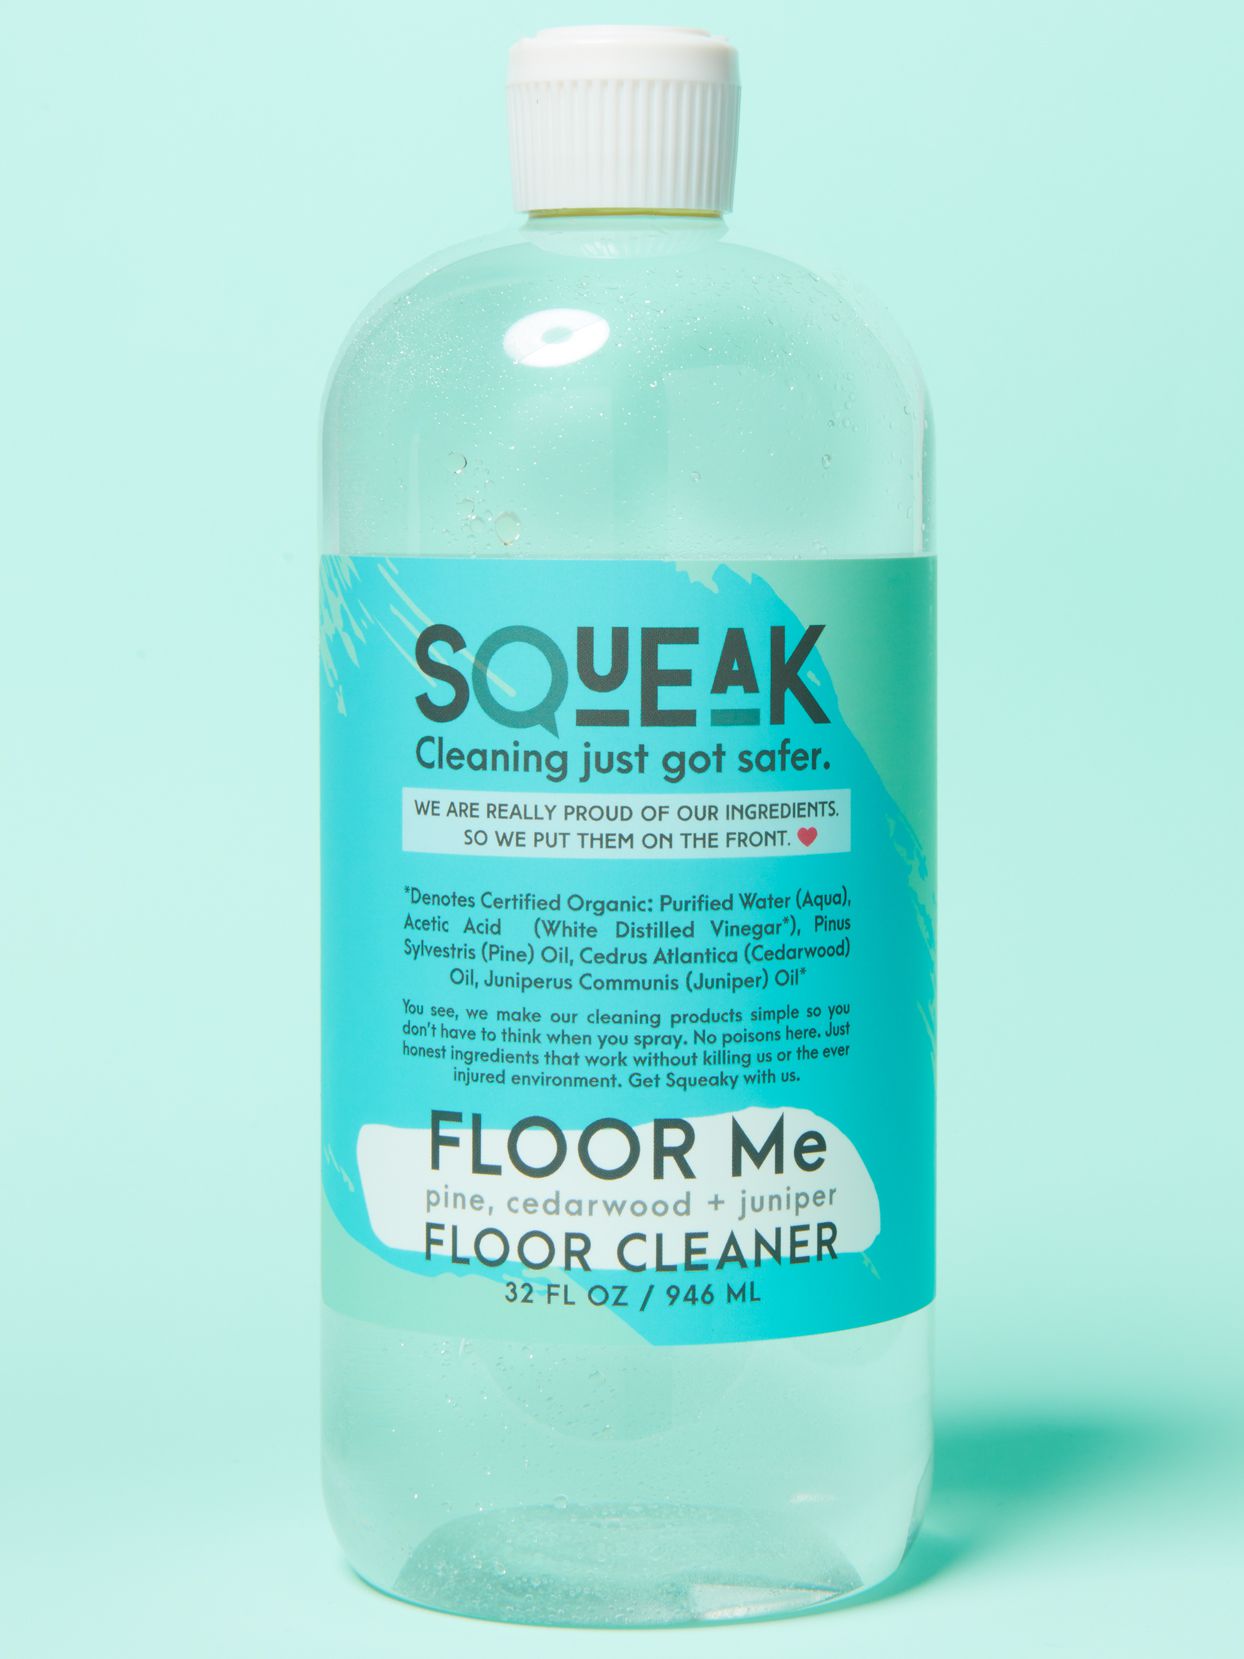 squeak floor me floor cleaner